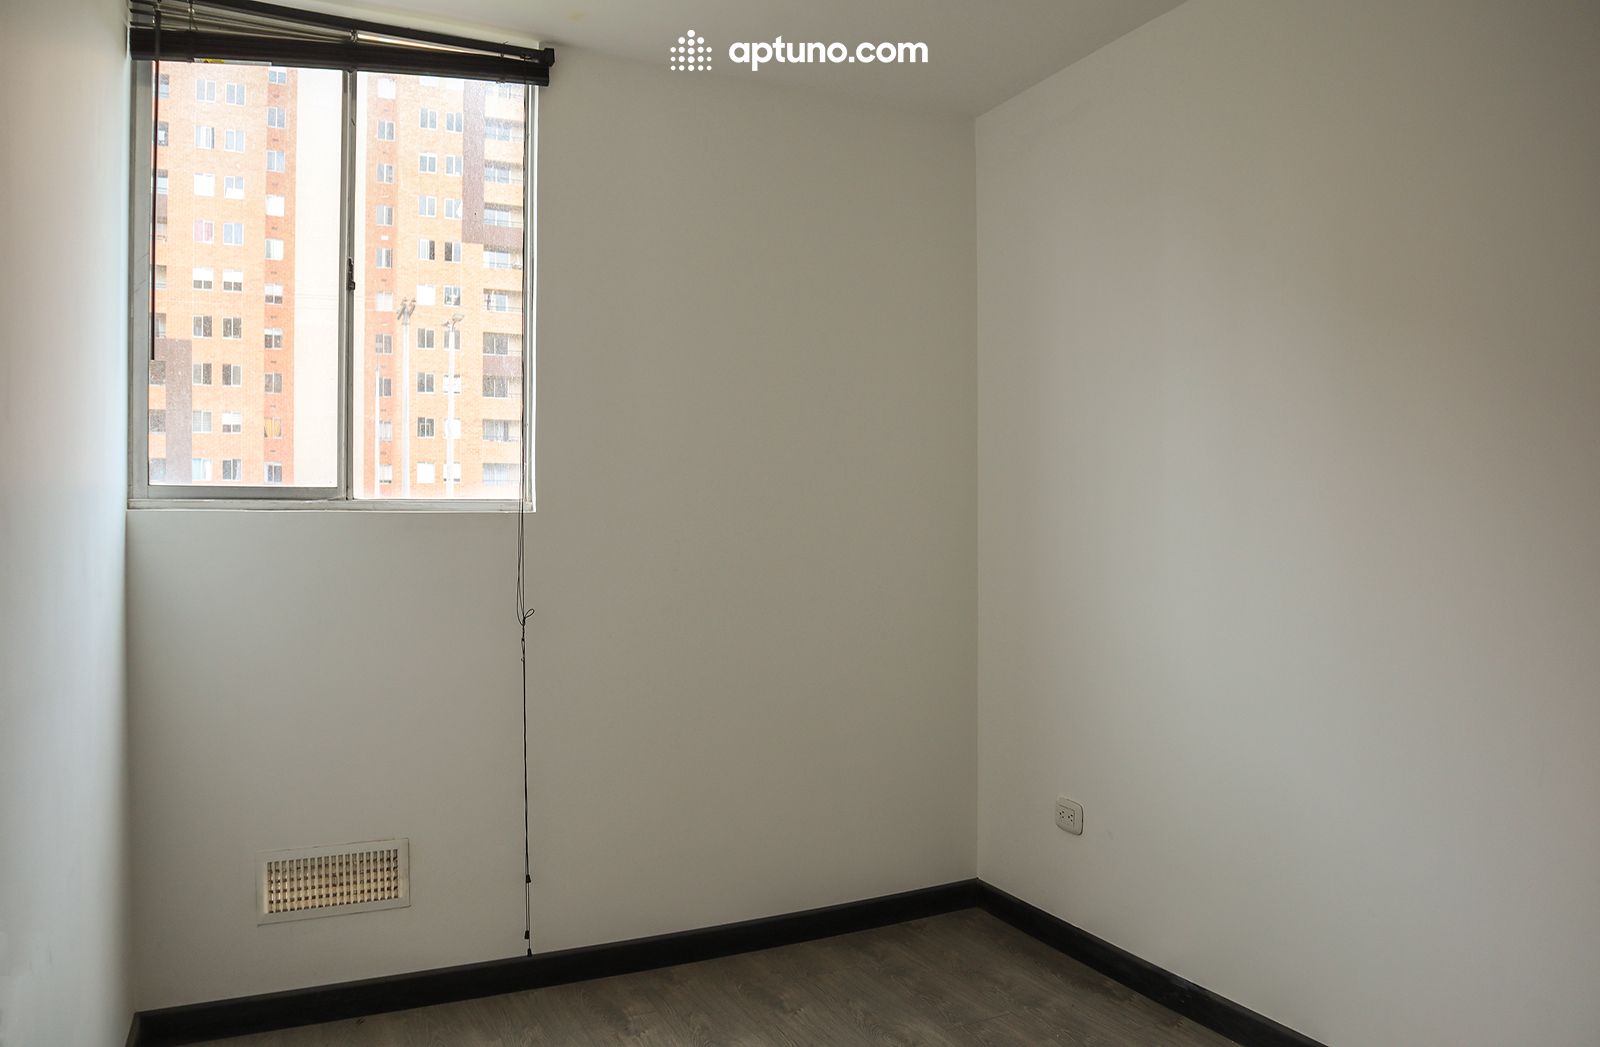 Apartamento en arriendo Madrid 64 m² - $ 770.000,00